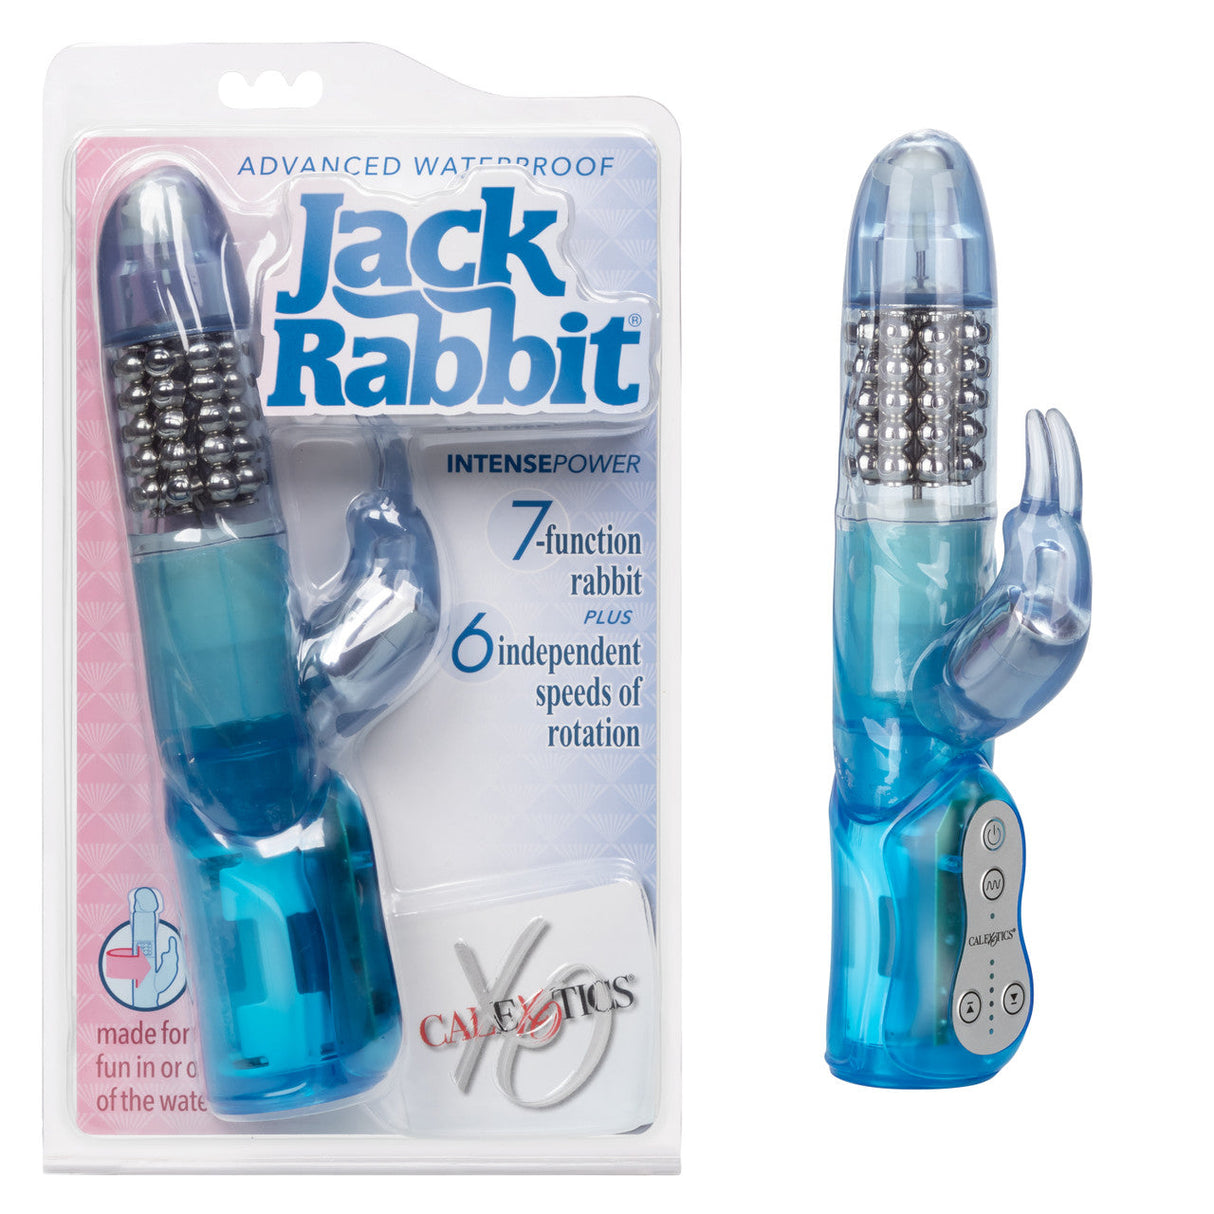 Jack Rabbit Waterproof Rabbit Dildo